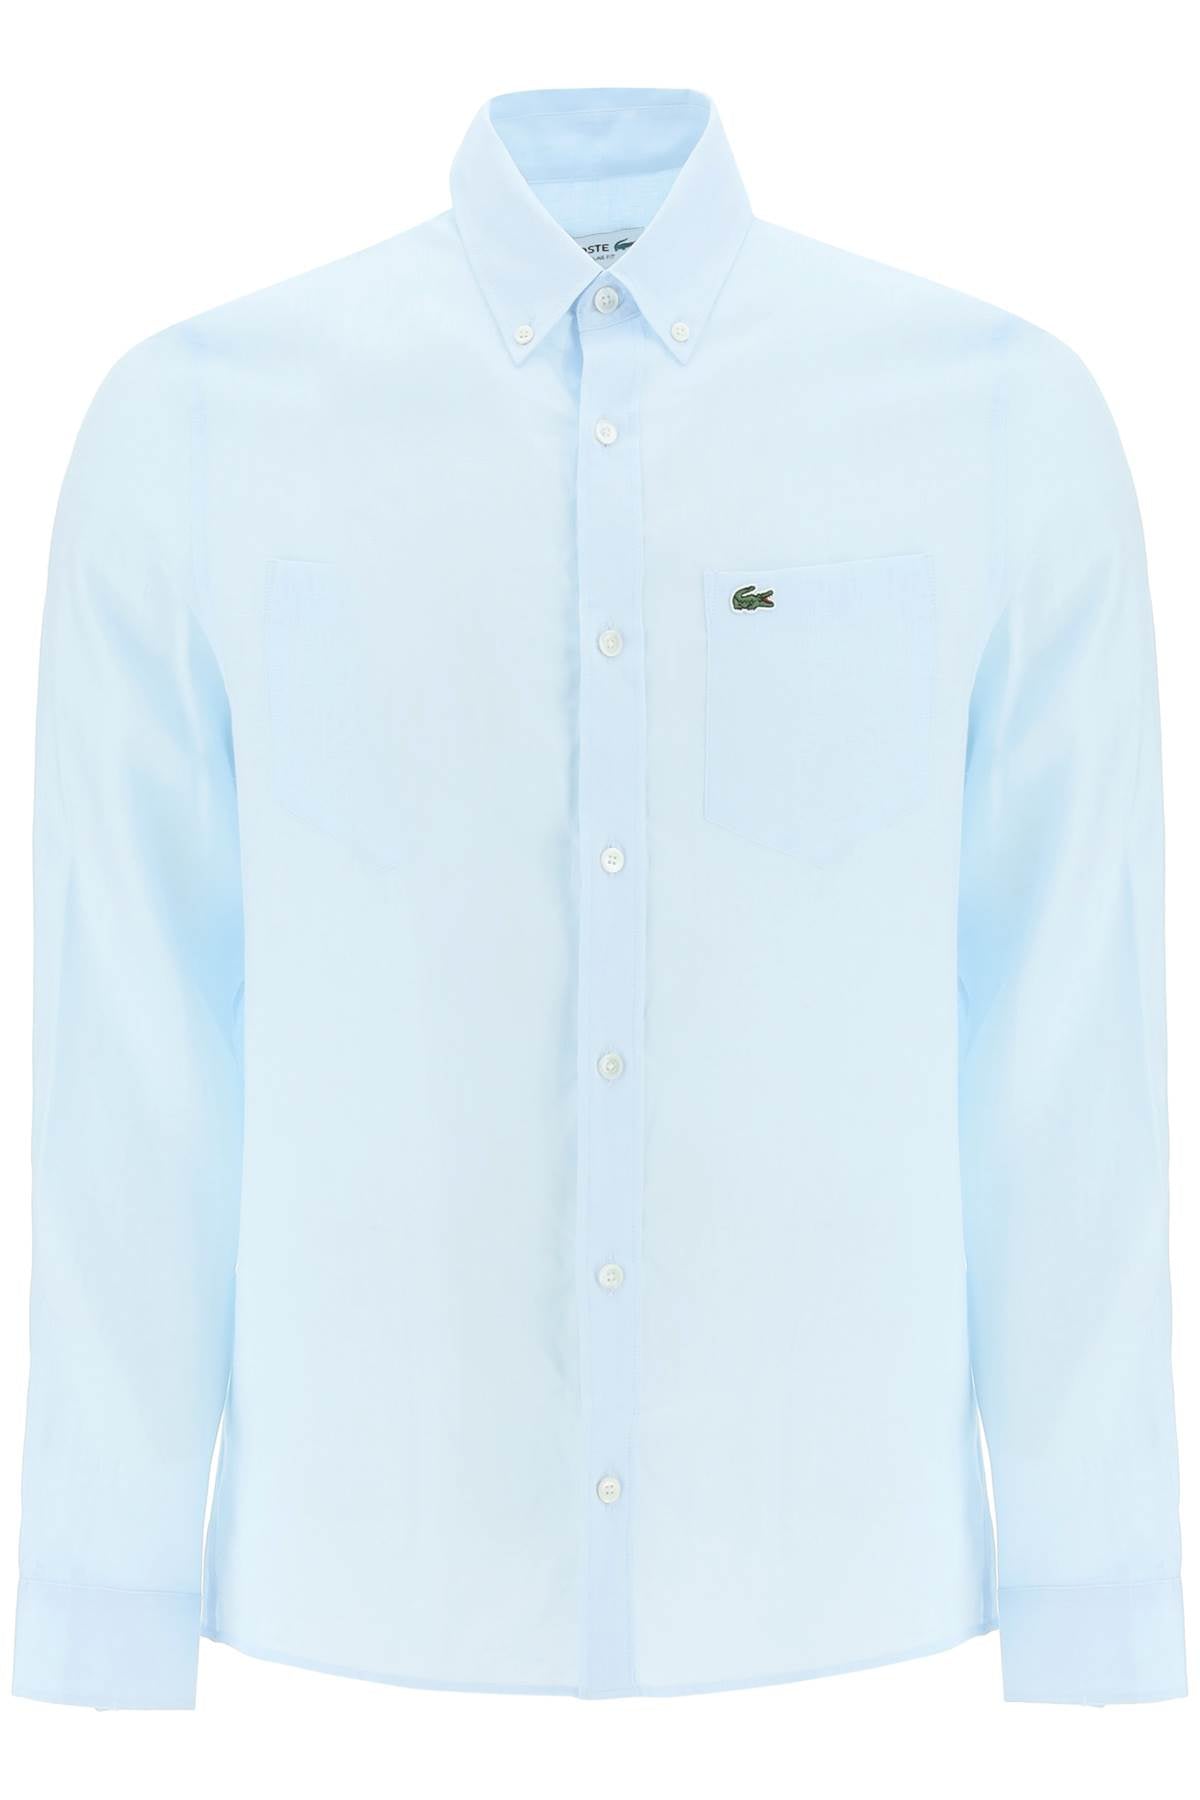 Lacoste light linen shirt-0